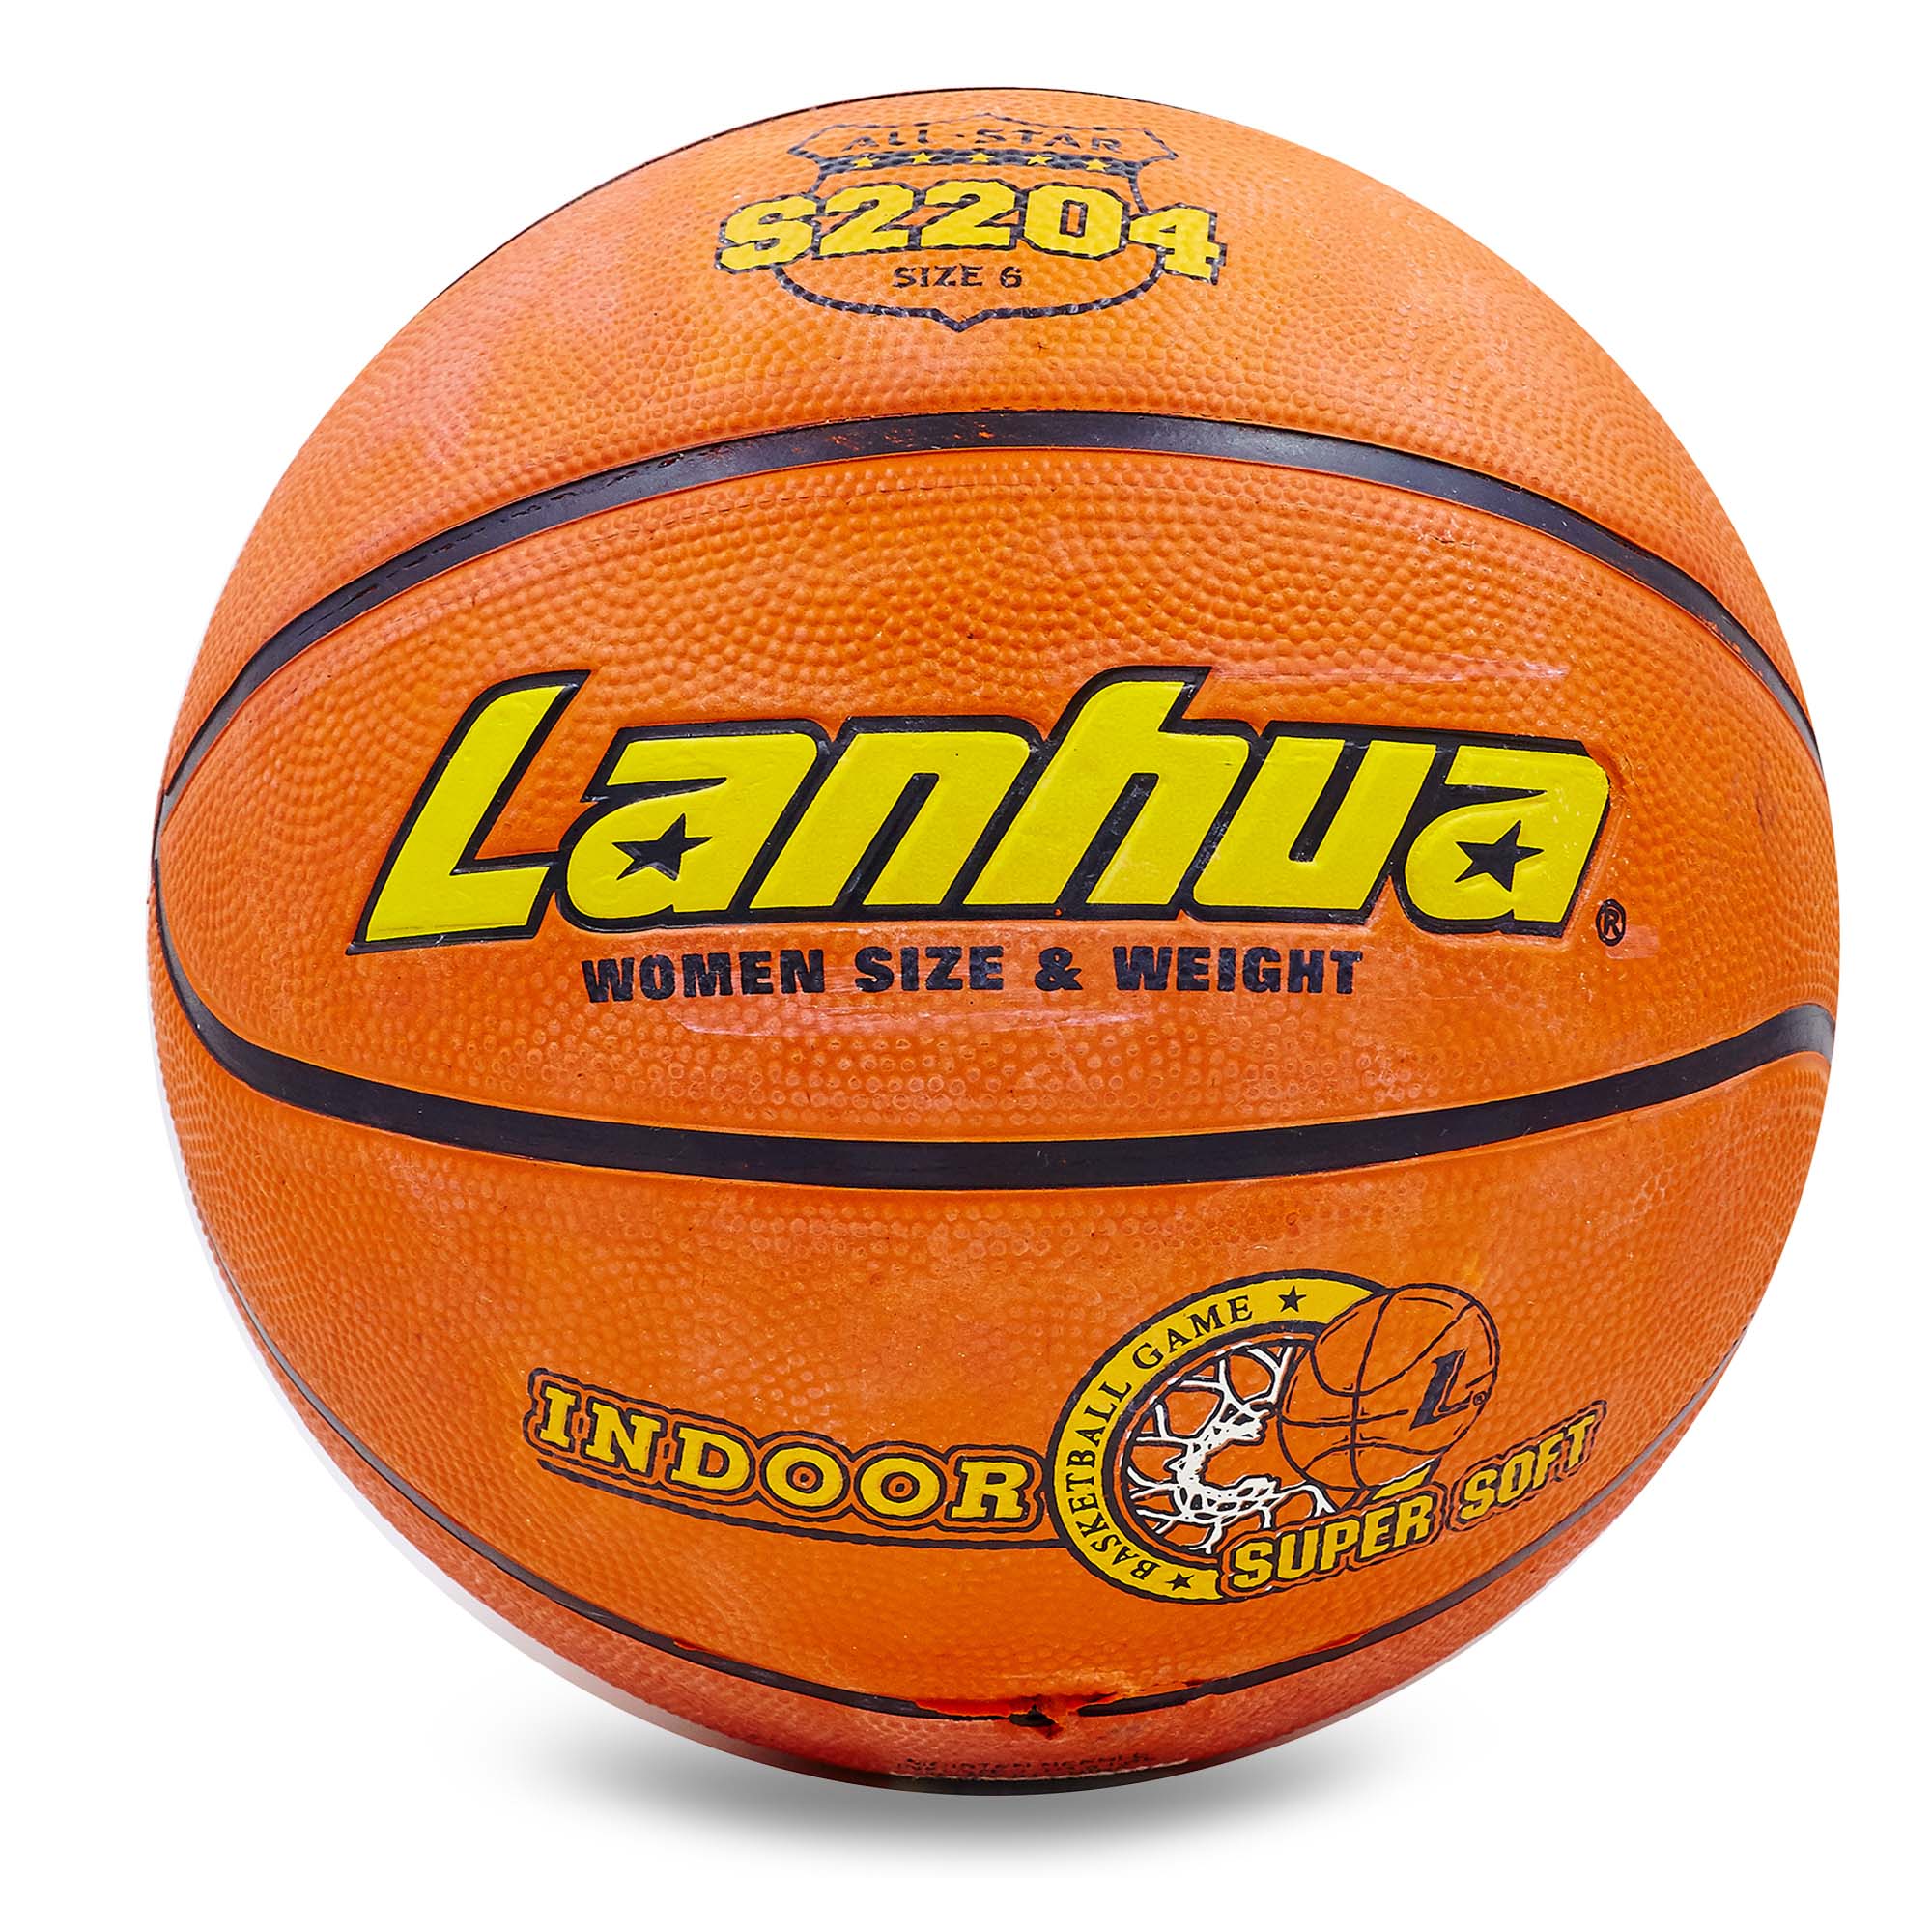 М'яч баскетбольний гумовий №6 LANHUA S2204 Super soft Indoor